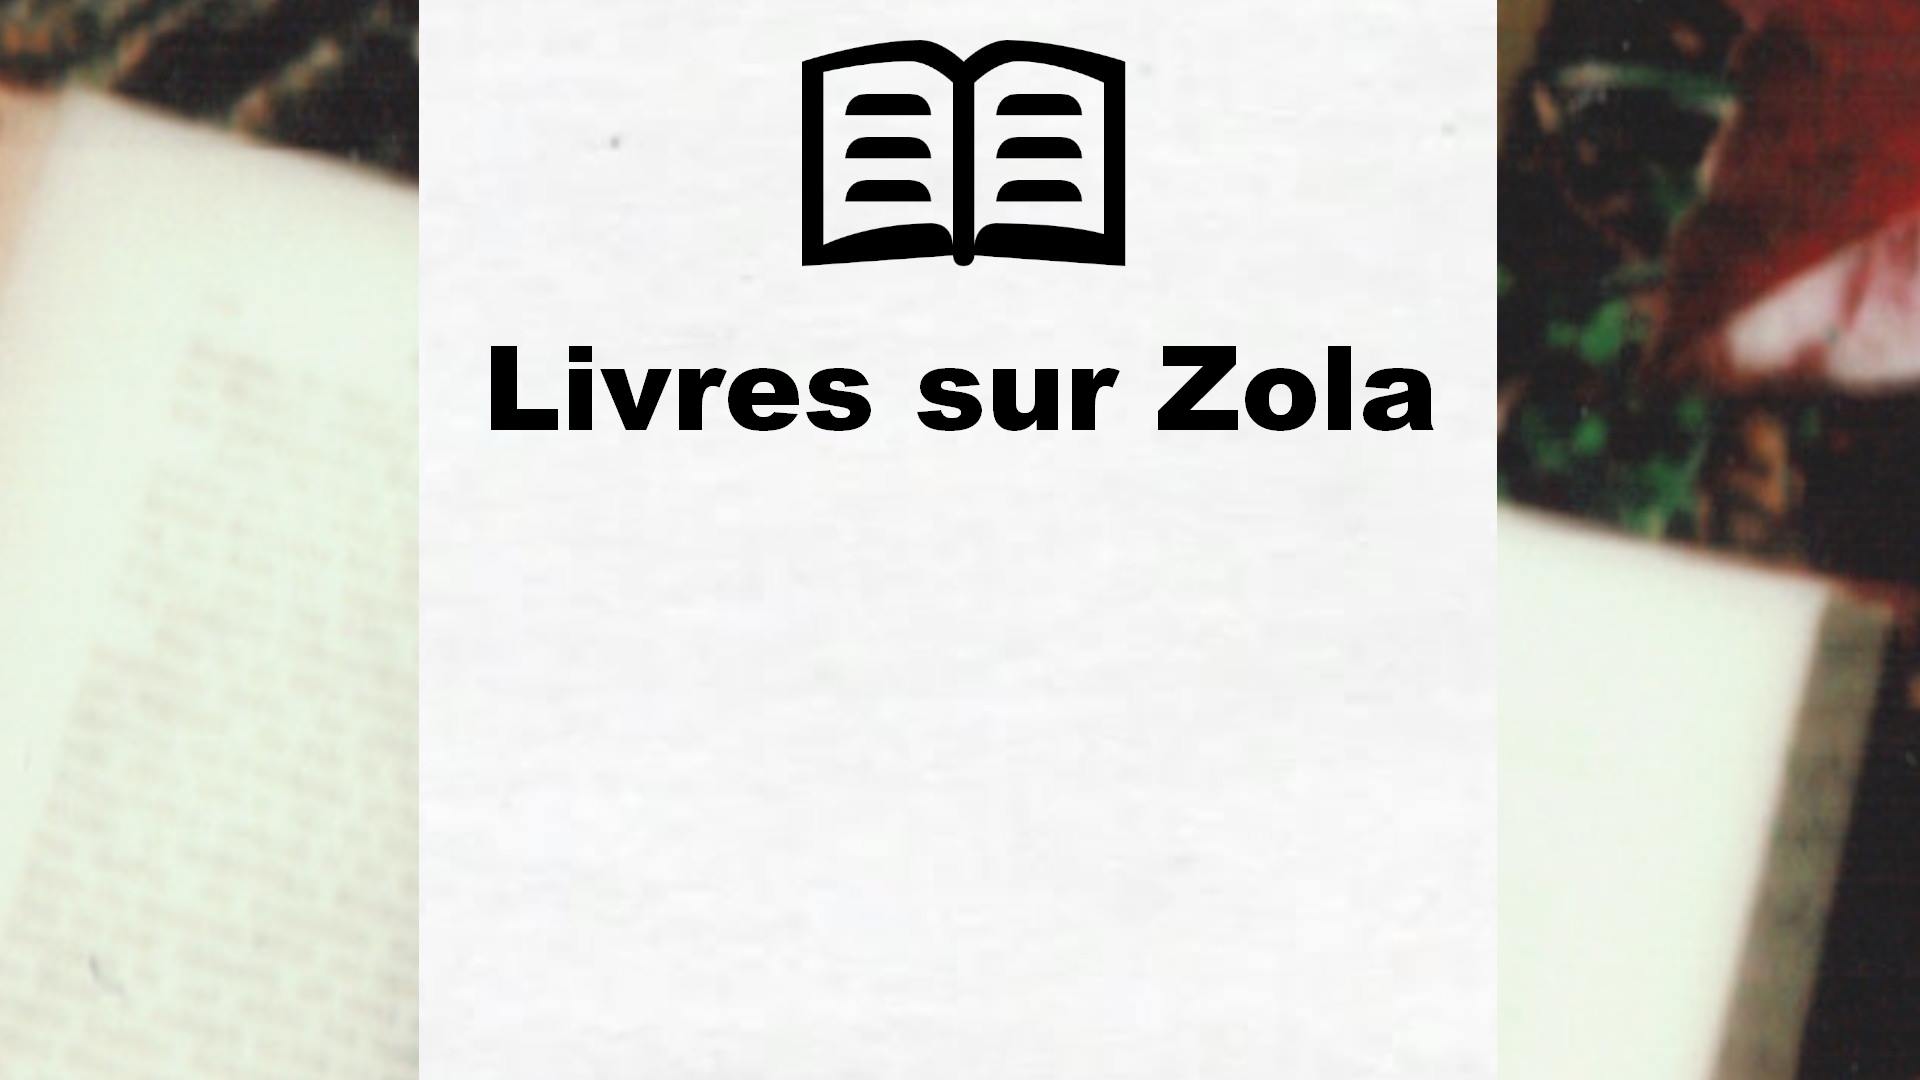 Livres sur Zola